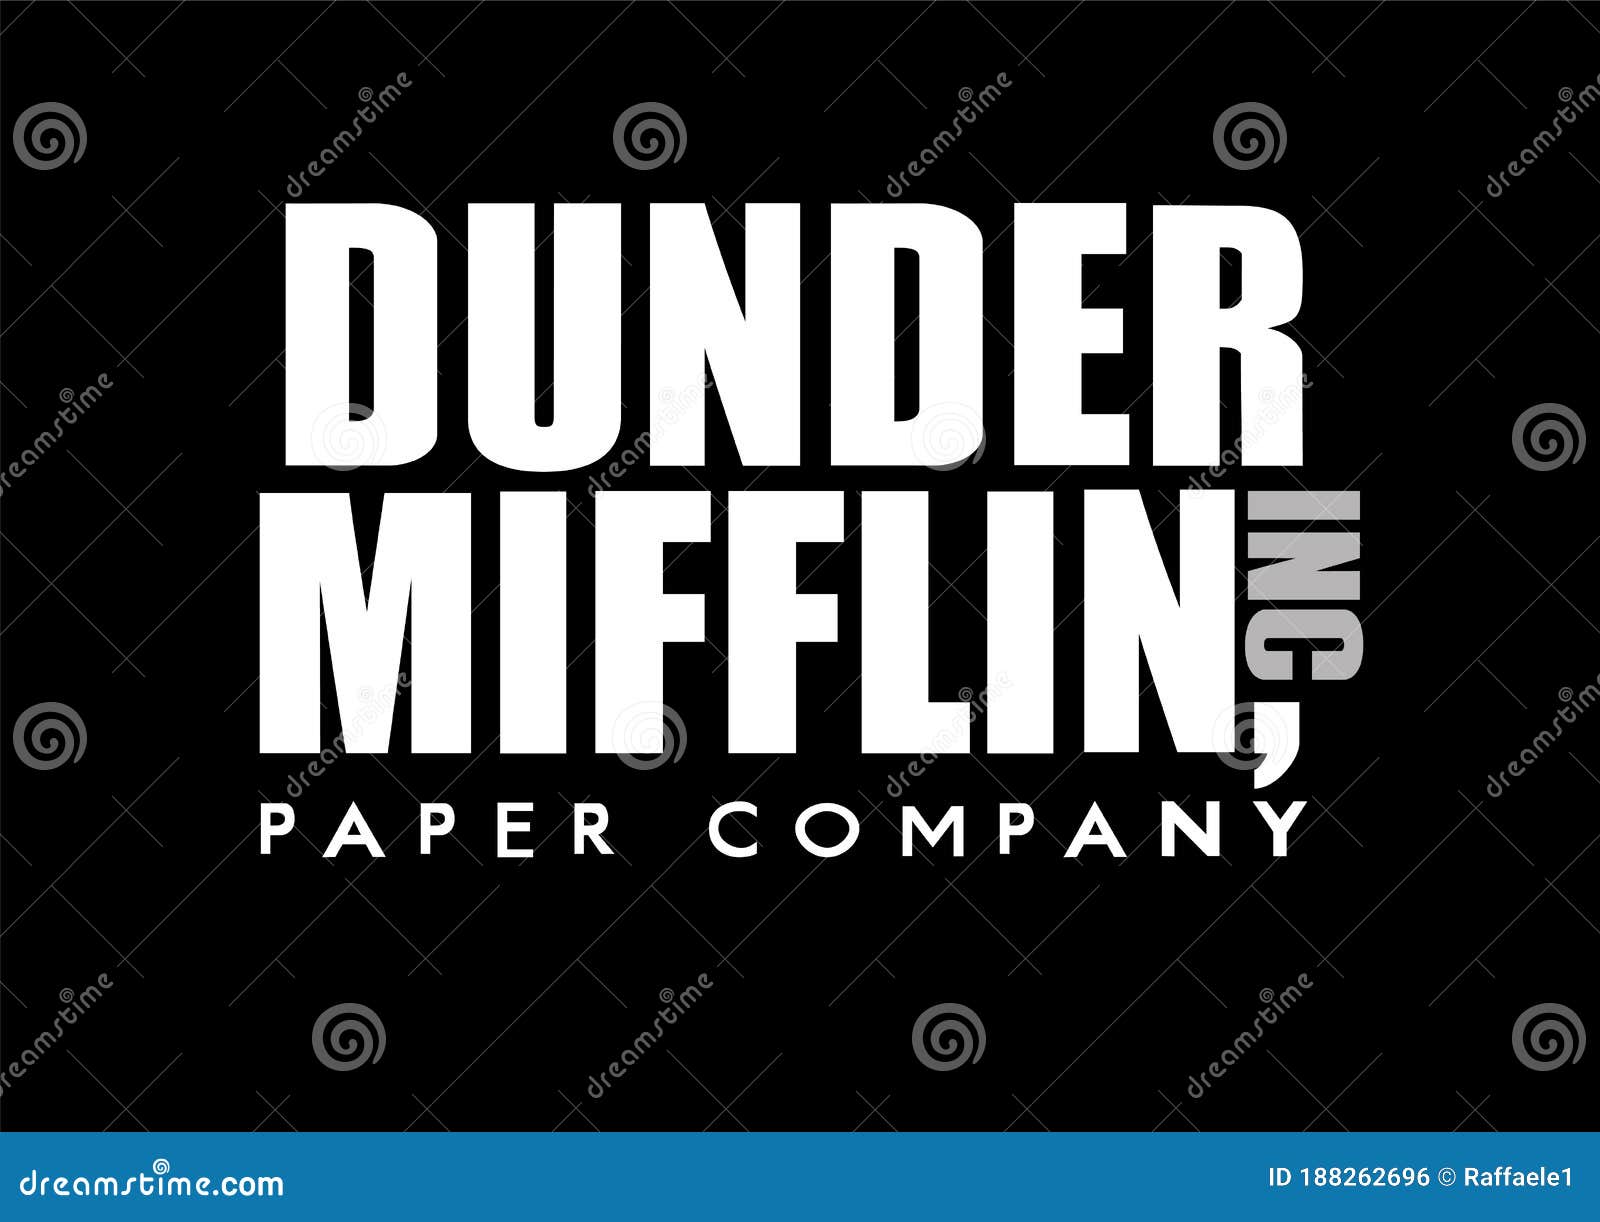 Dunder Mifflin Inc Logo stock illustration. Illustration of